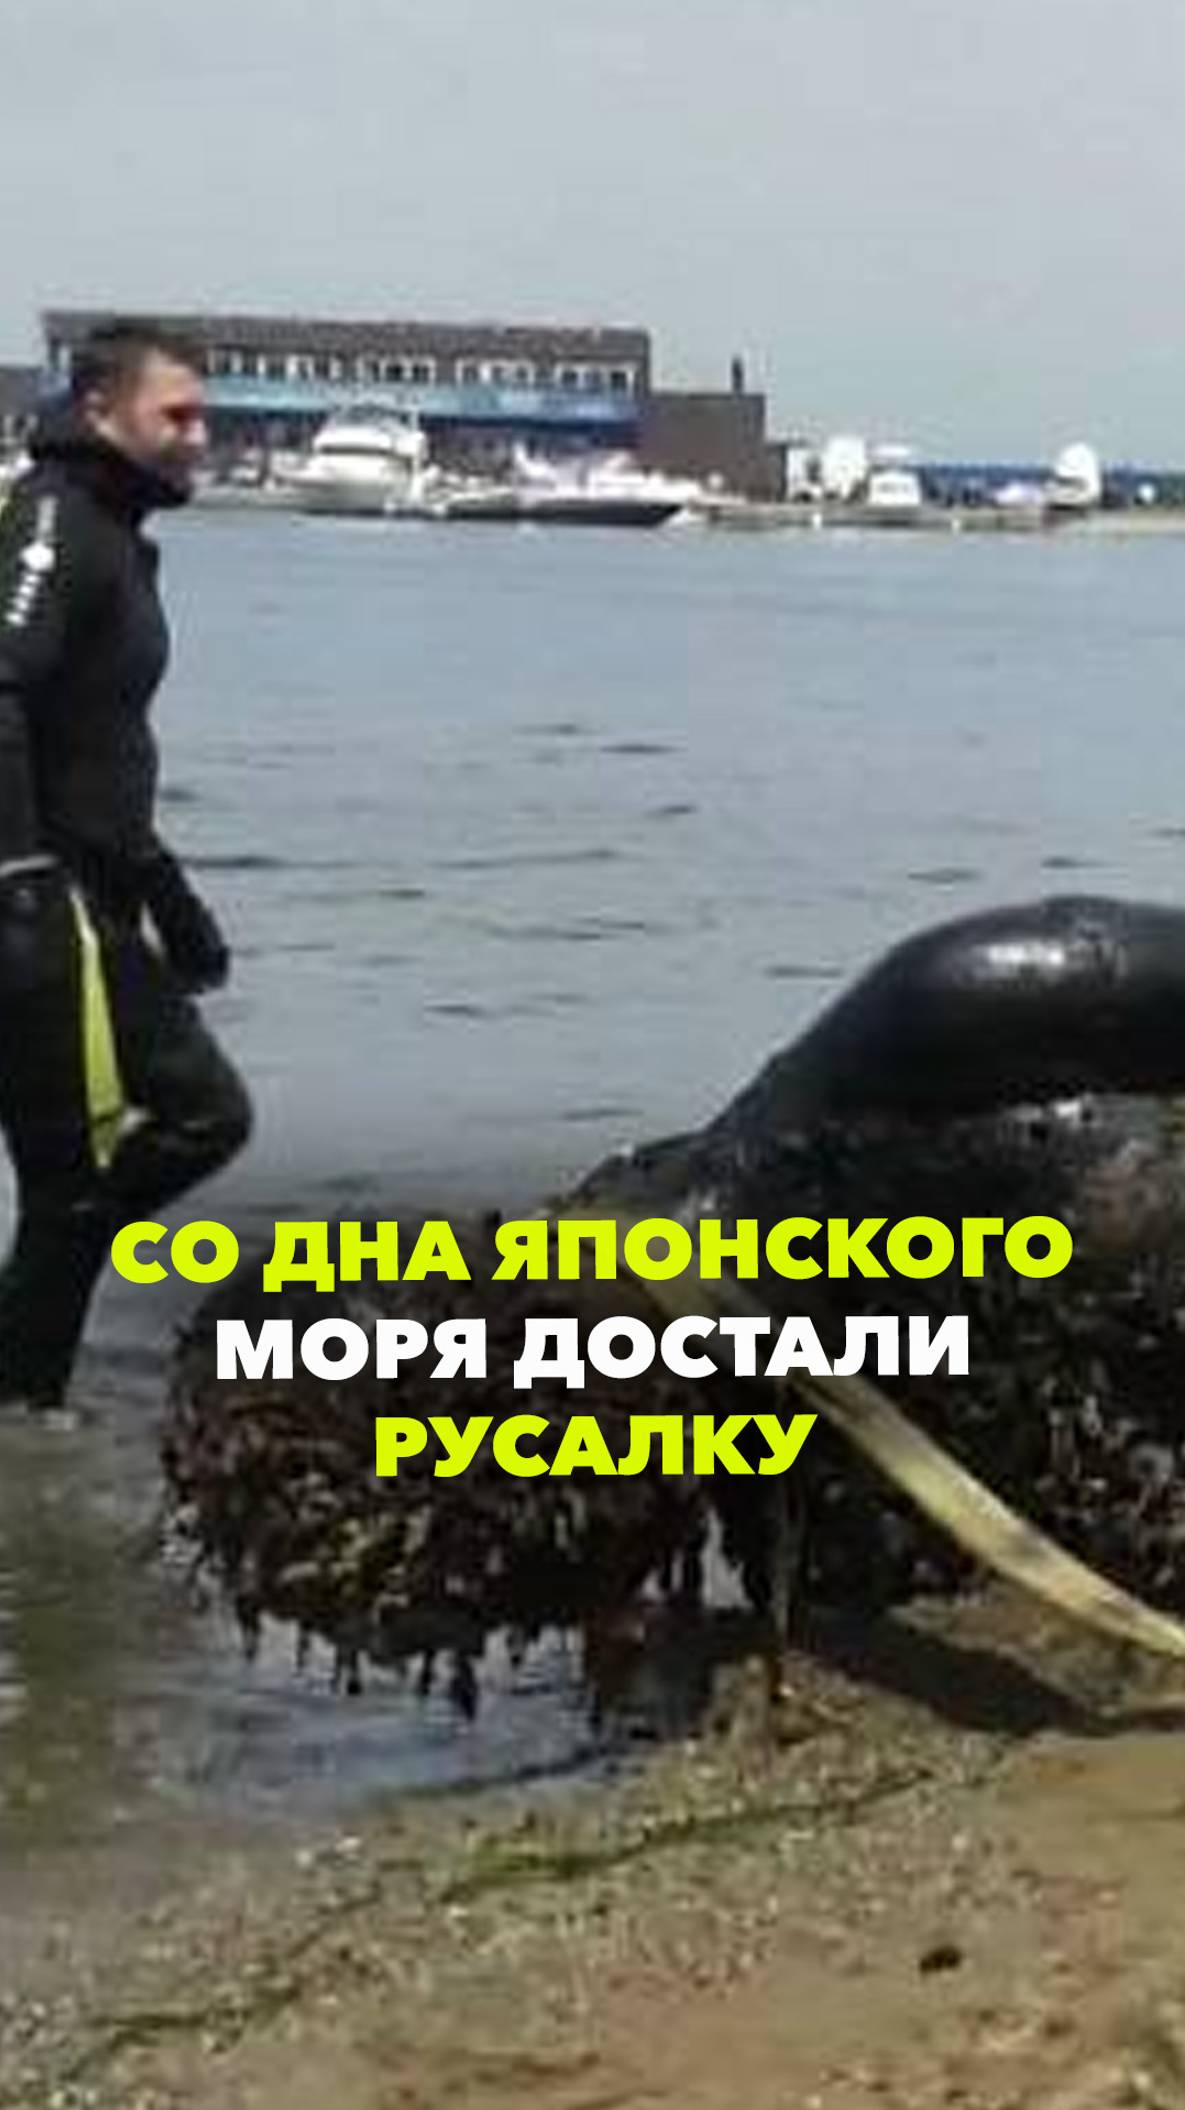 Во Владивостоке со дна Японского моря подняли русалку. Она около 20 лет лежала под водой